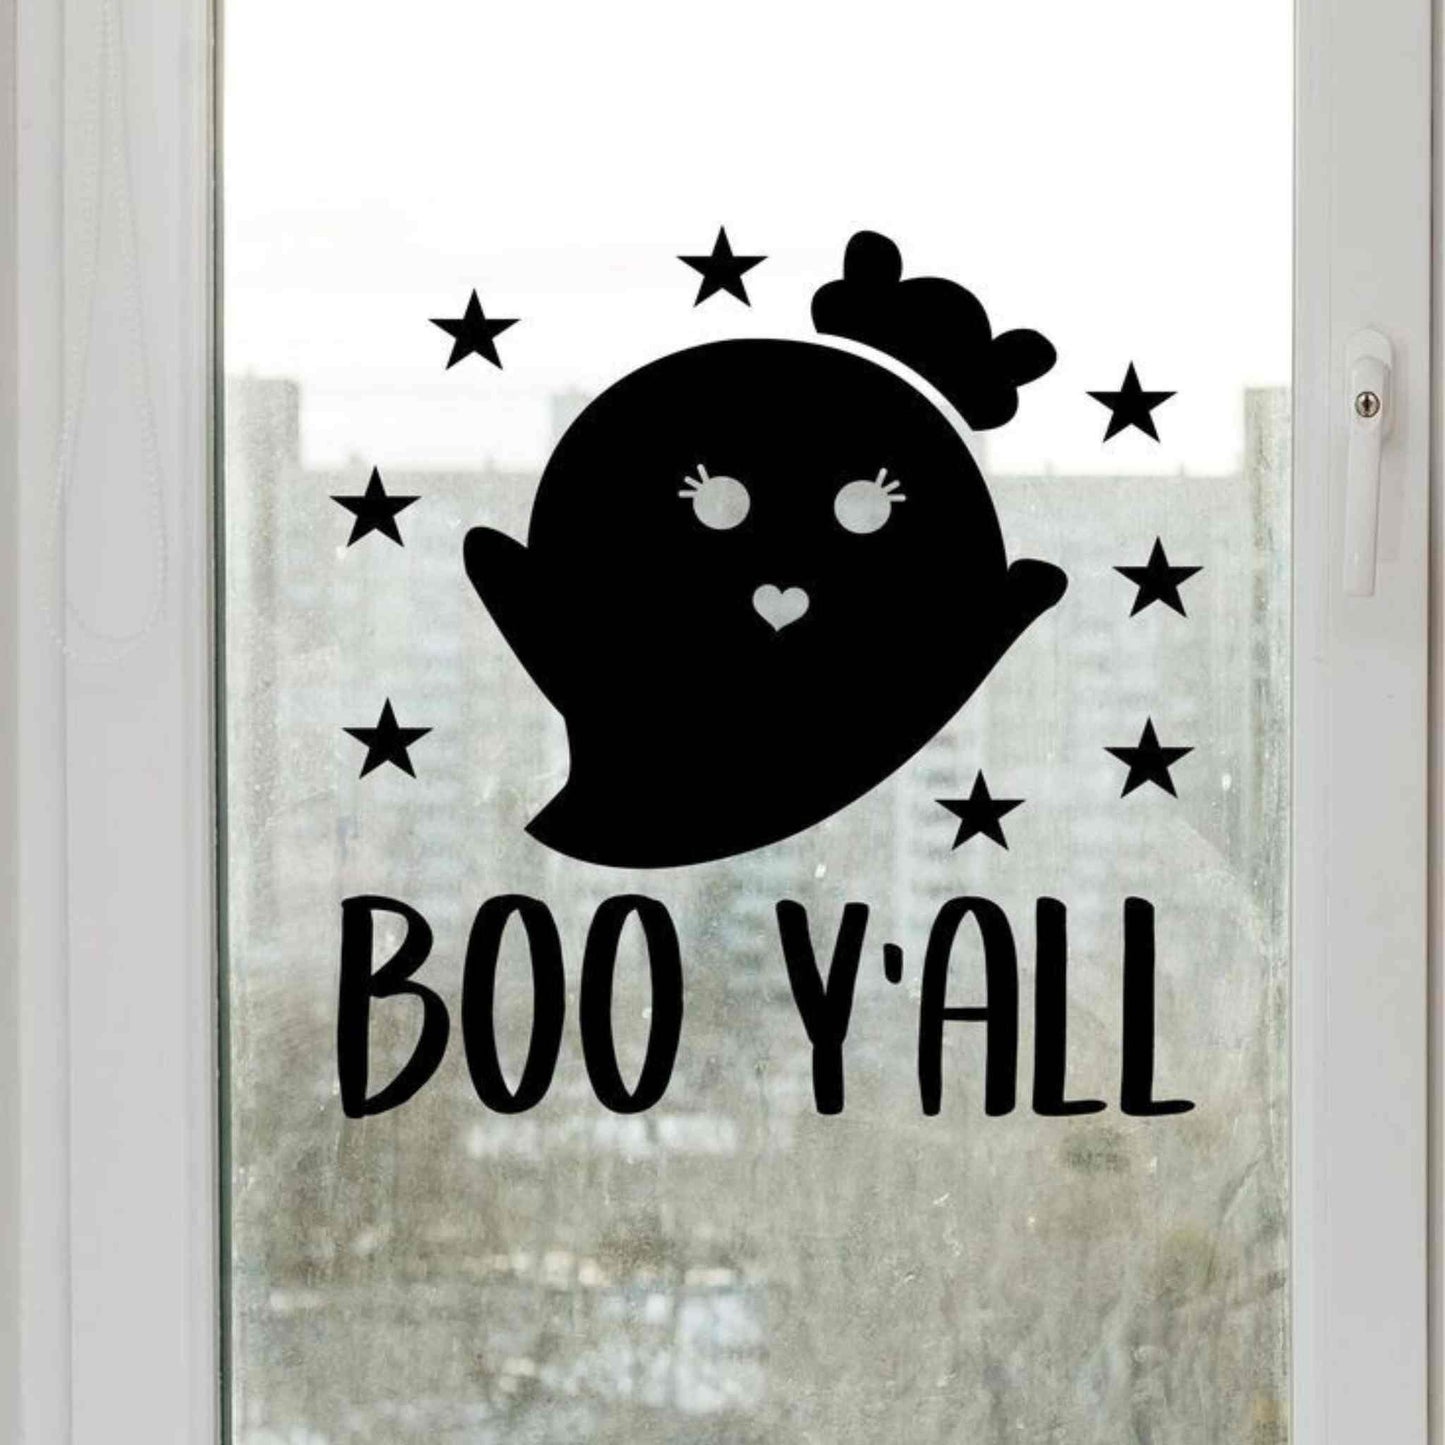 Sticker de Halloween ce ilustreaza o fantoma si textul "Boo y'all", negru, foarte rezistent.